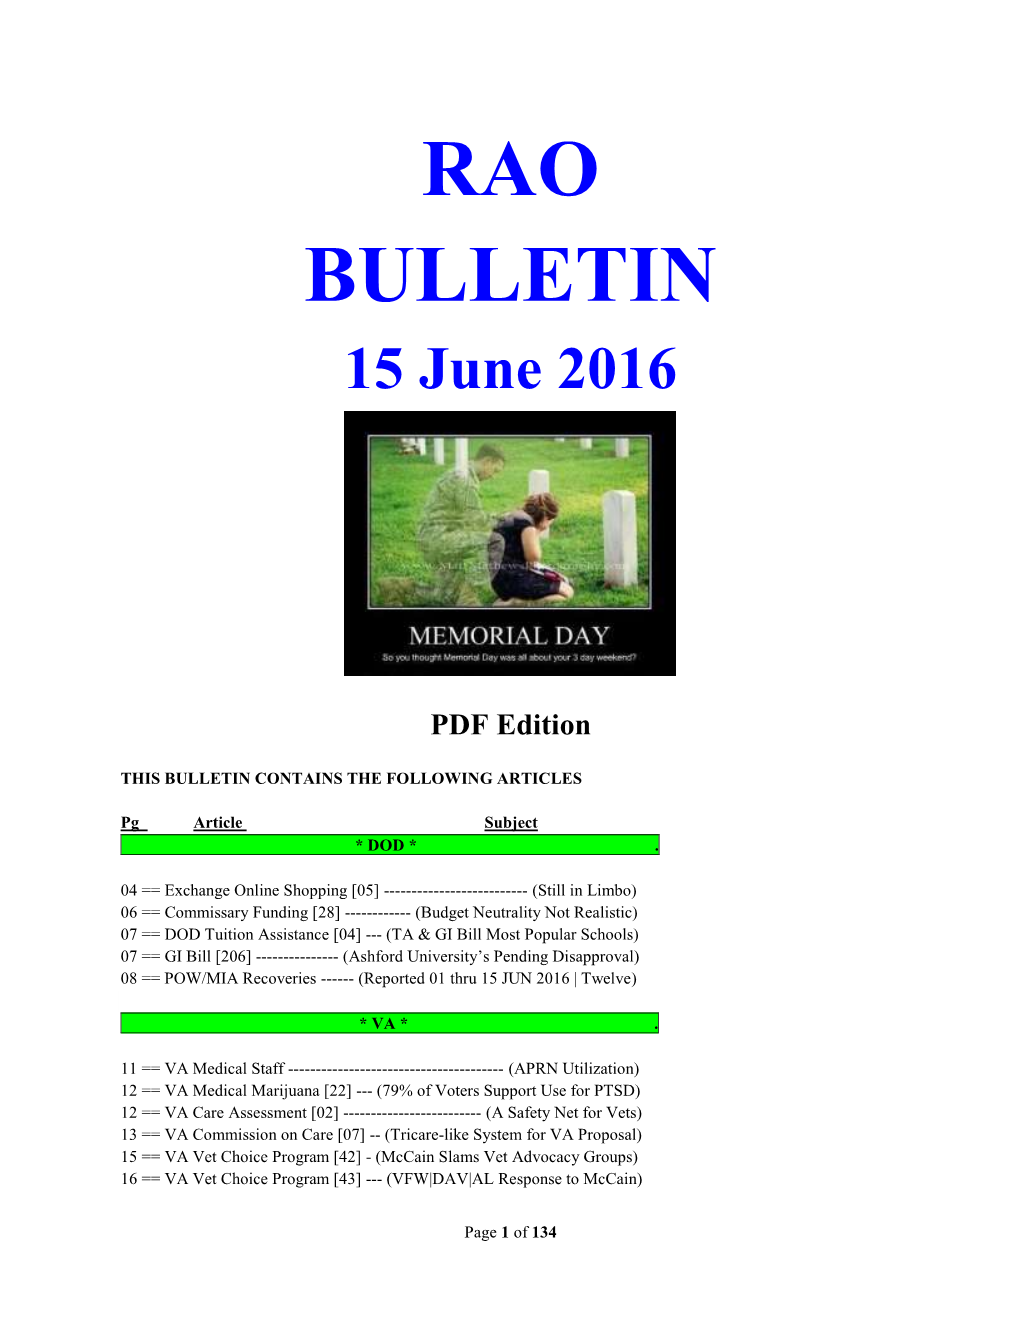 Bulletin 160615 (PDF Edition)